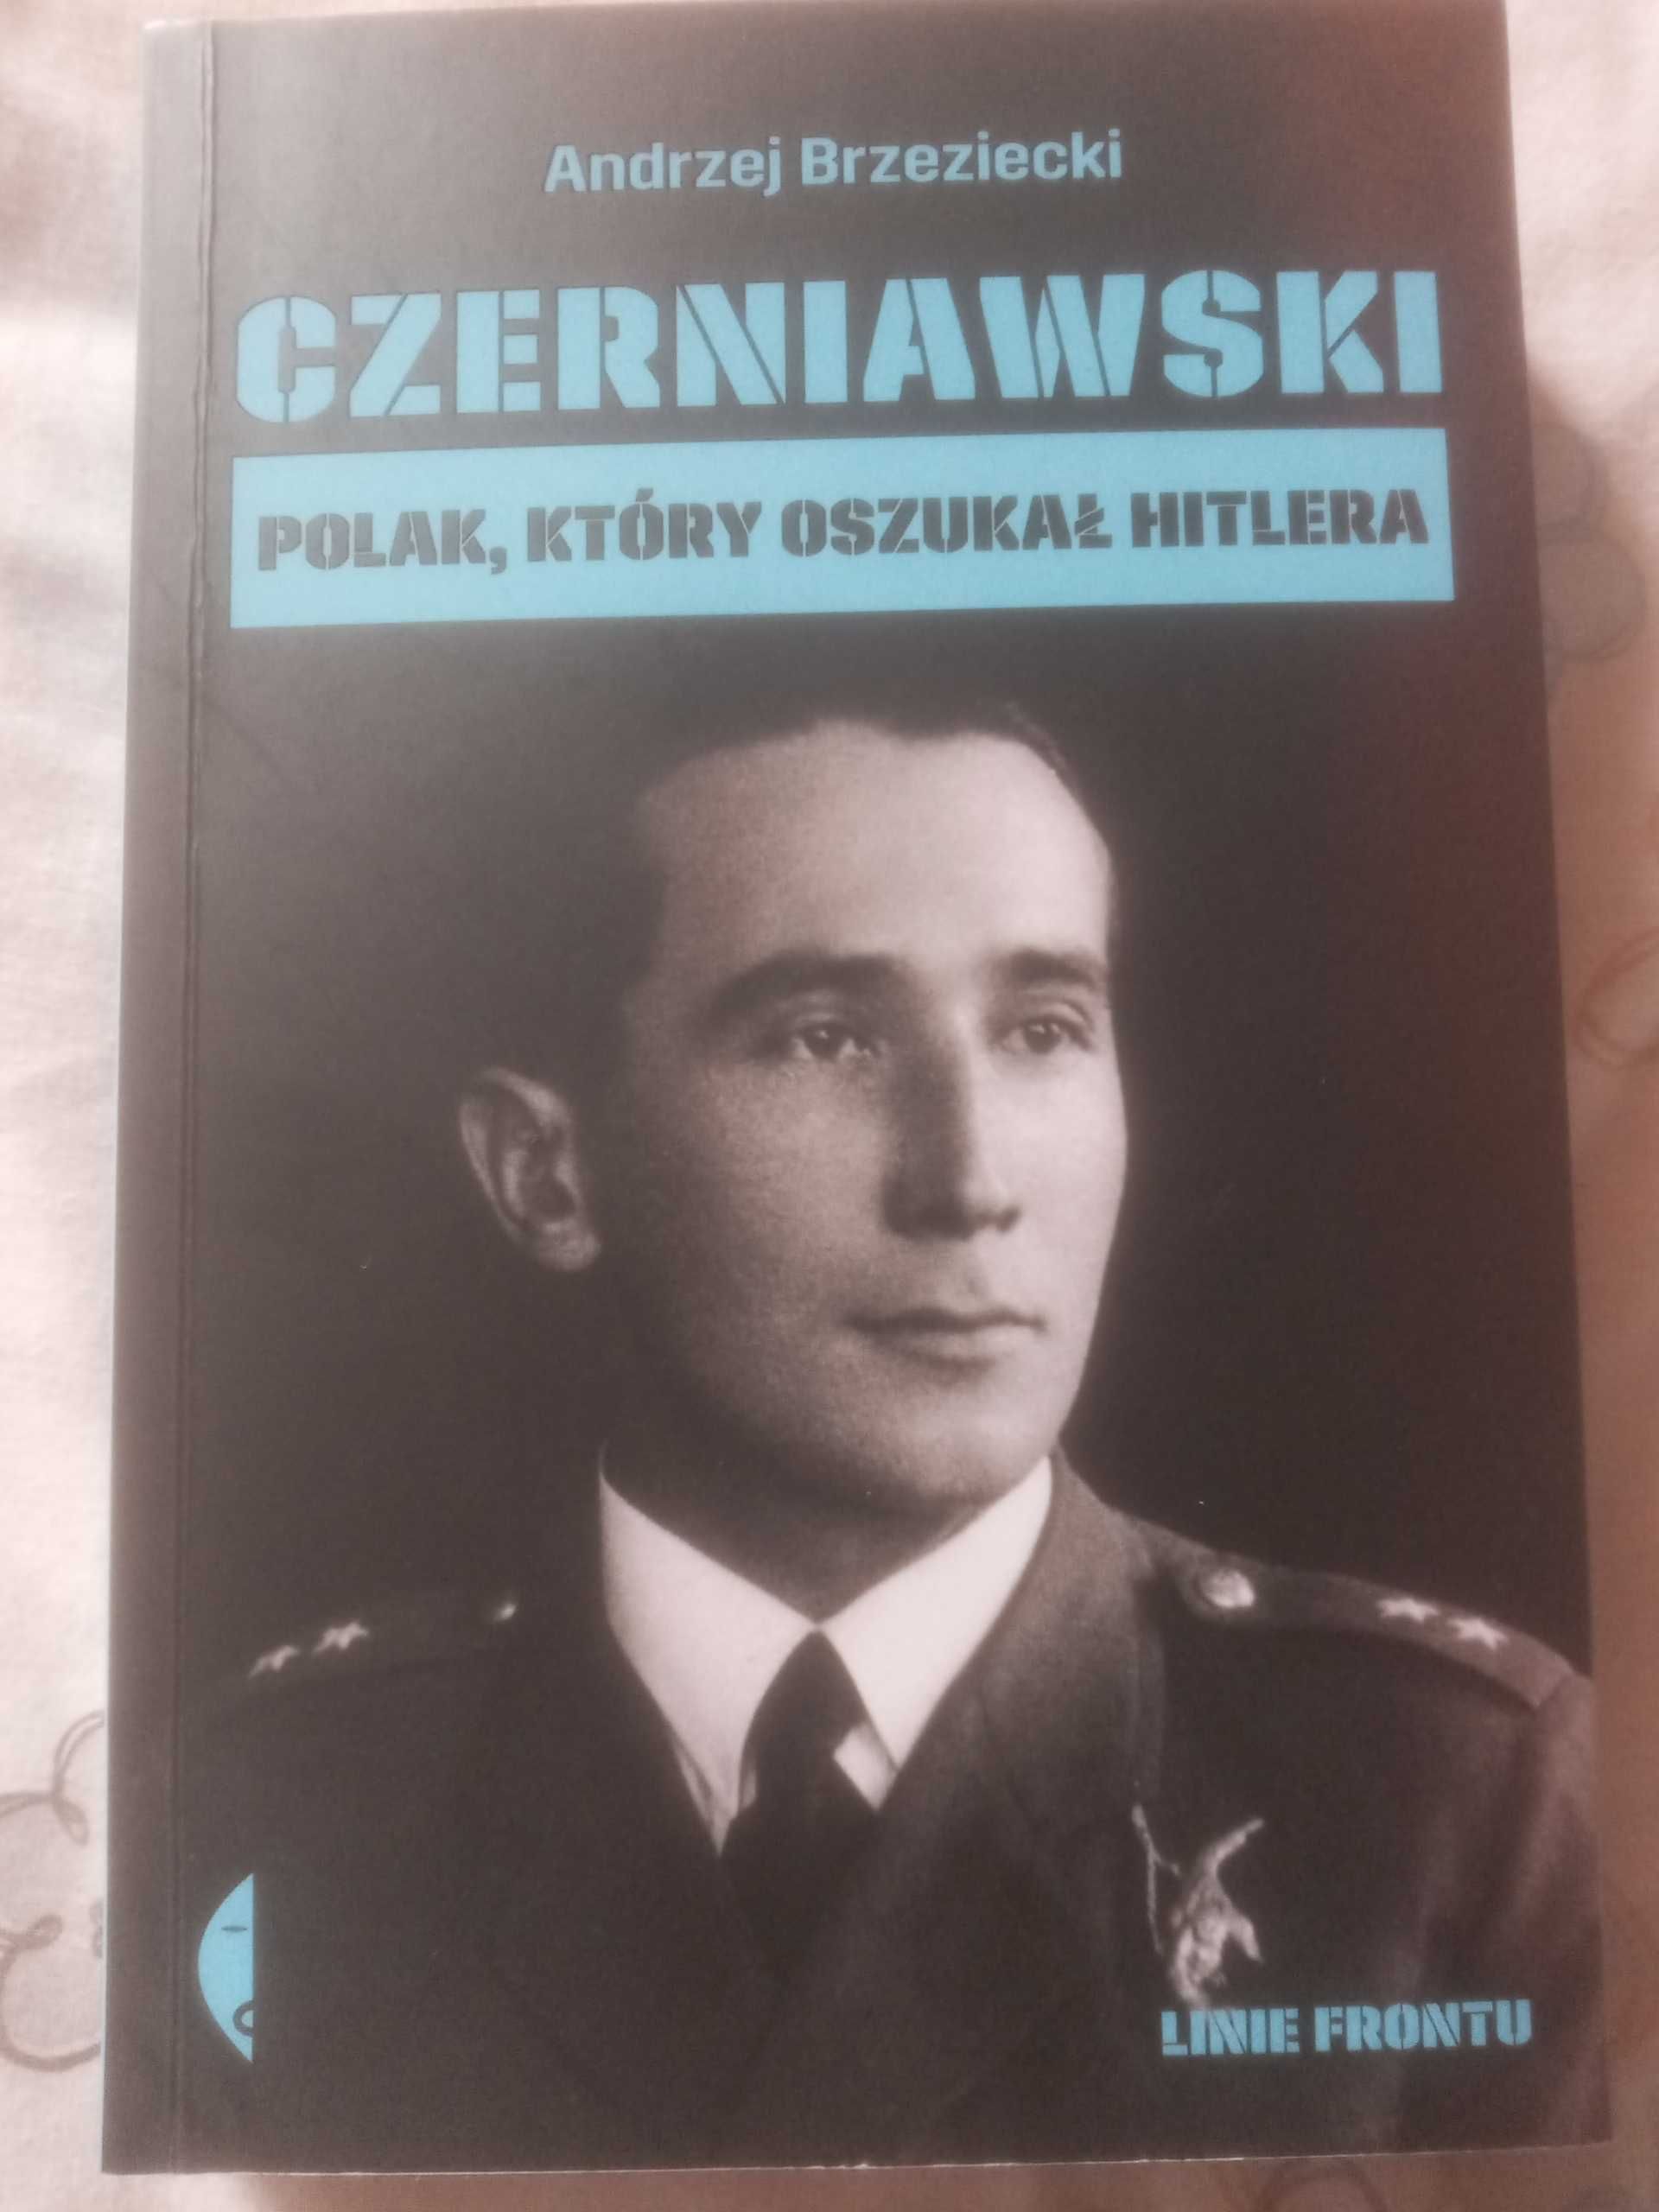 "Czerniawski. Polak, który oszukał Hitlera" - A. Brzeziecki